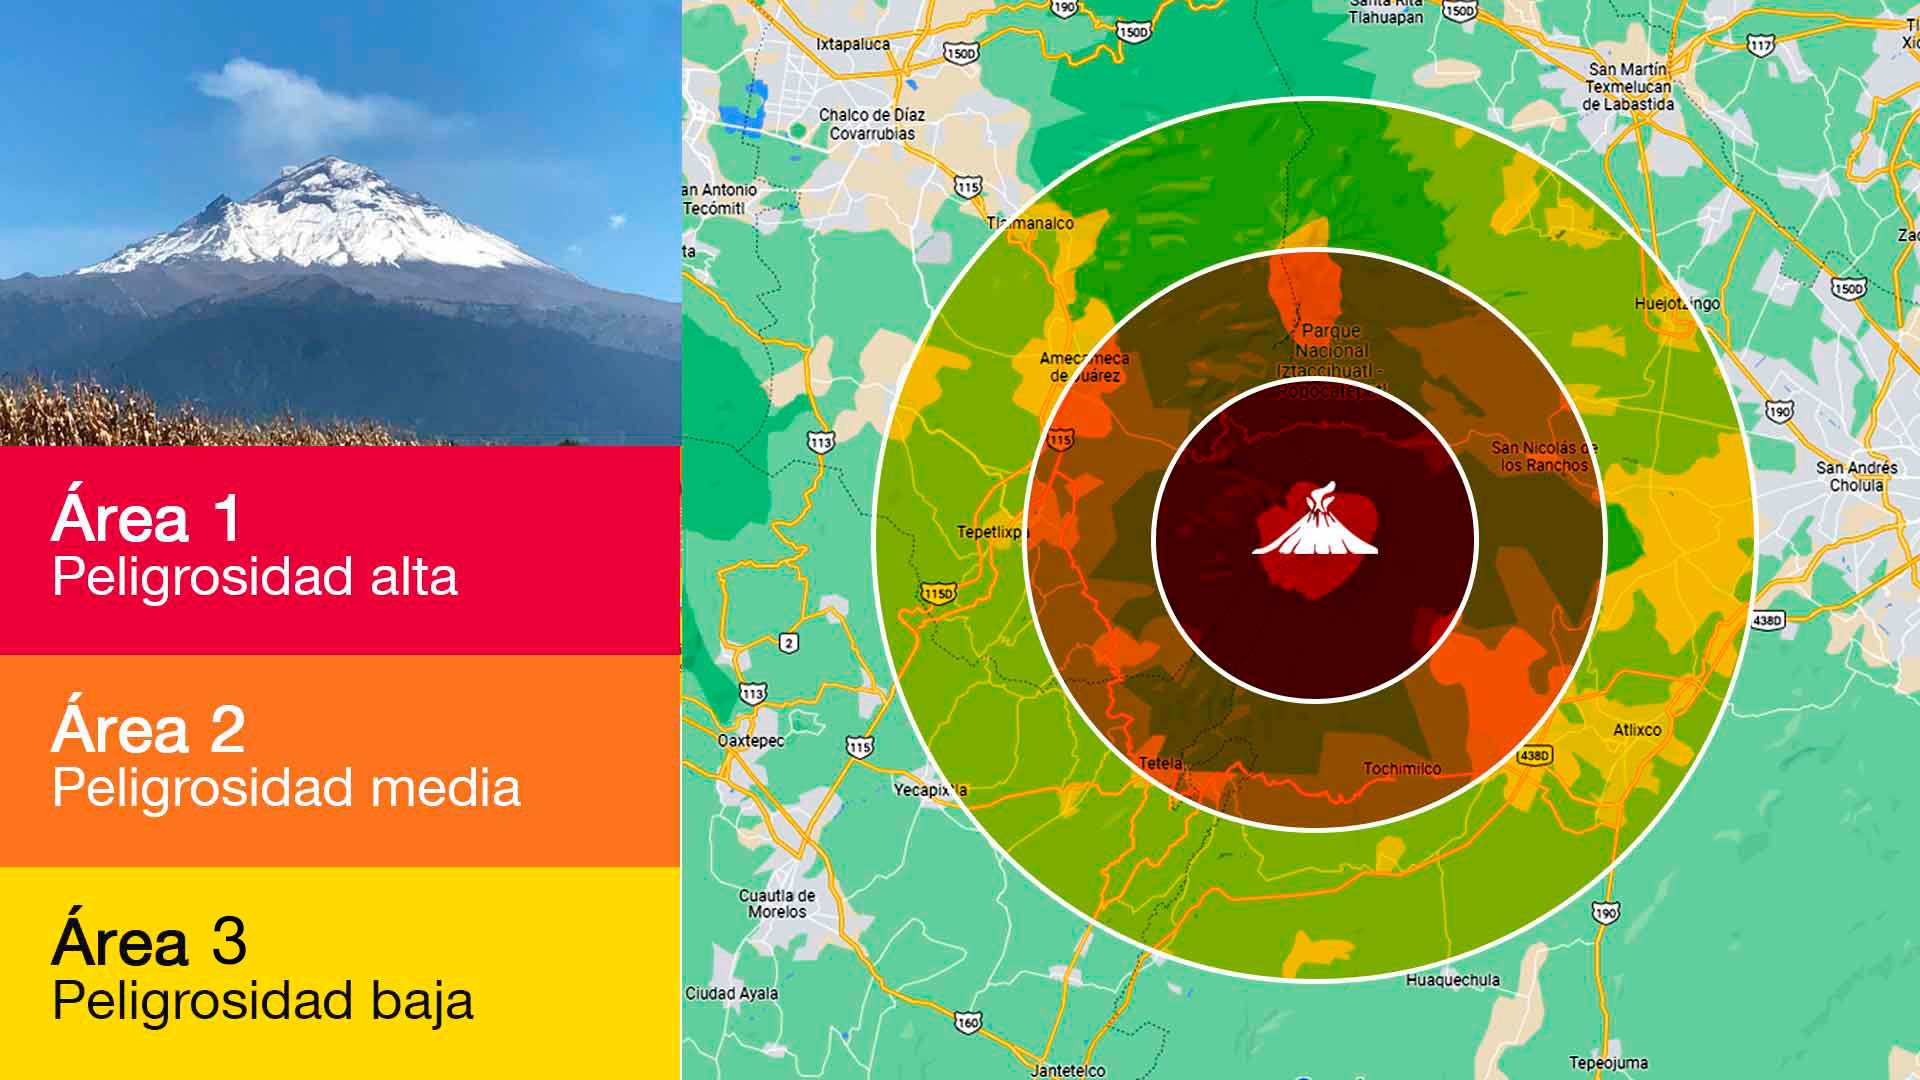 Popocatépetl lanza 67 exhalaciones en 24 horas, según monitoreo